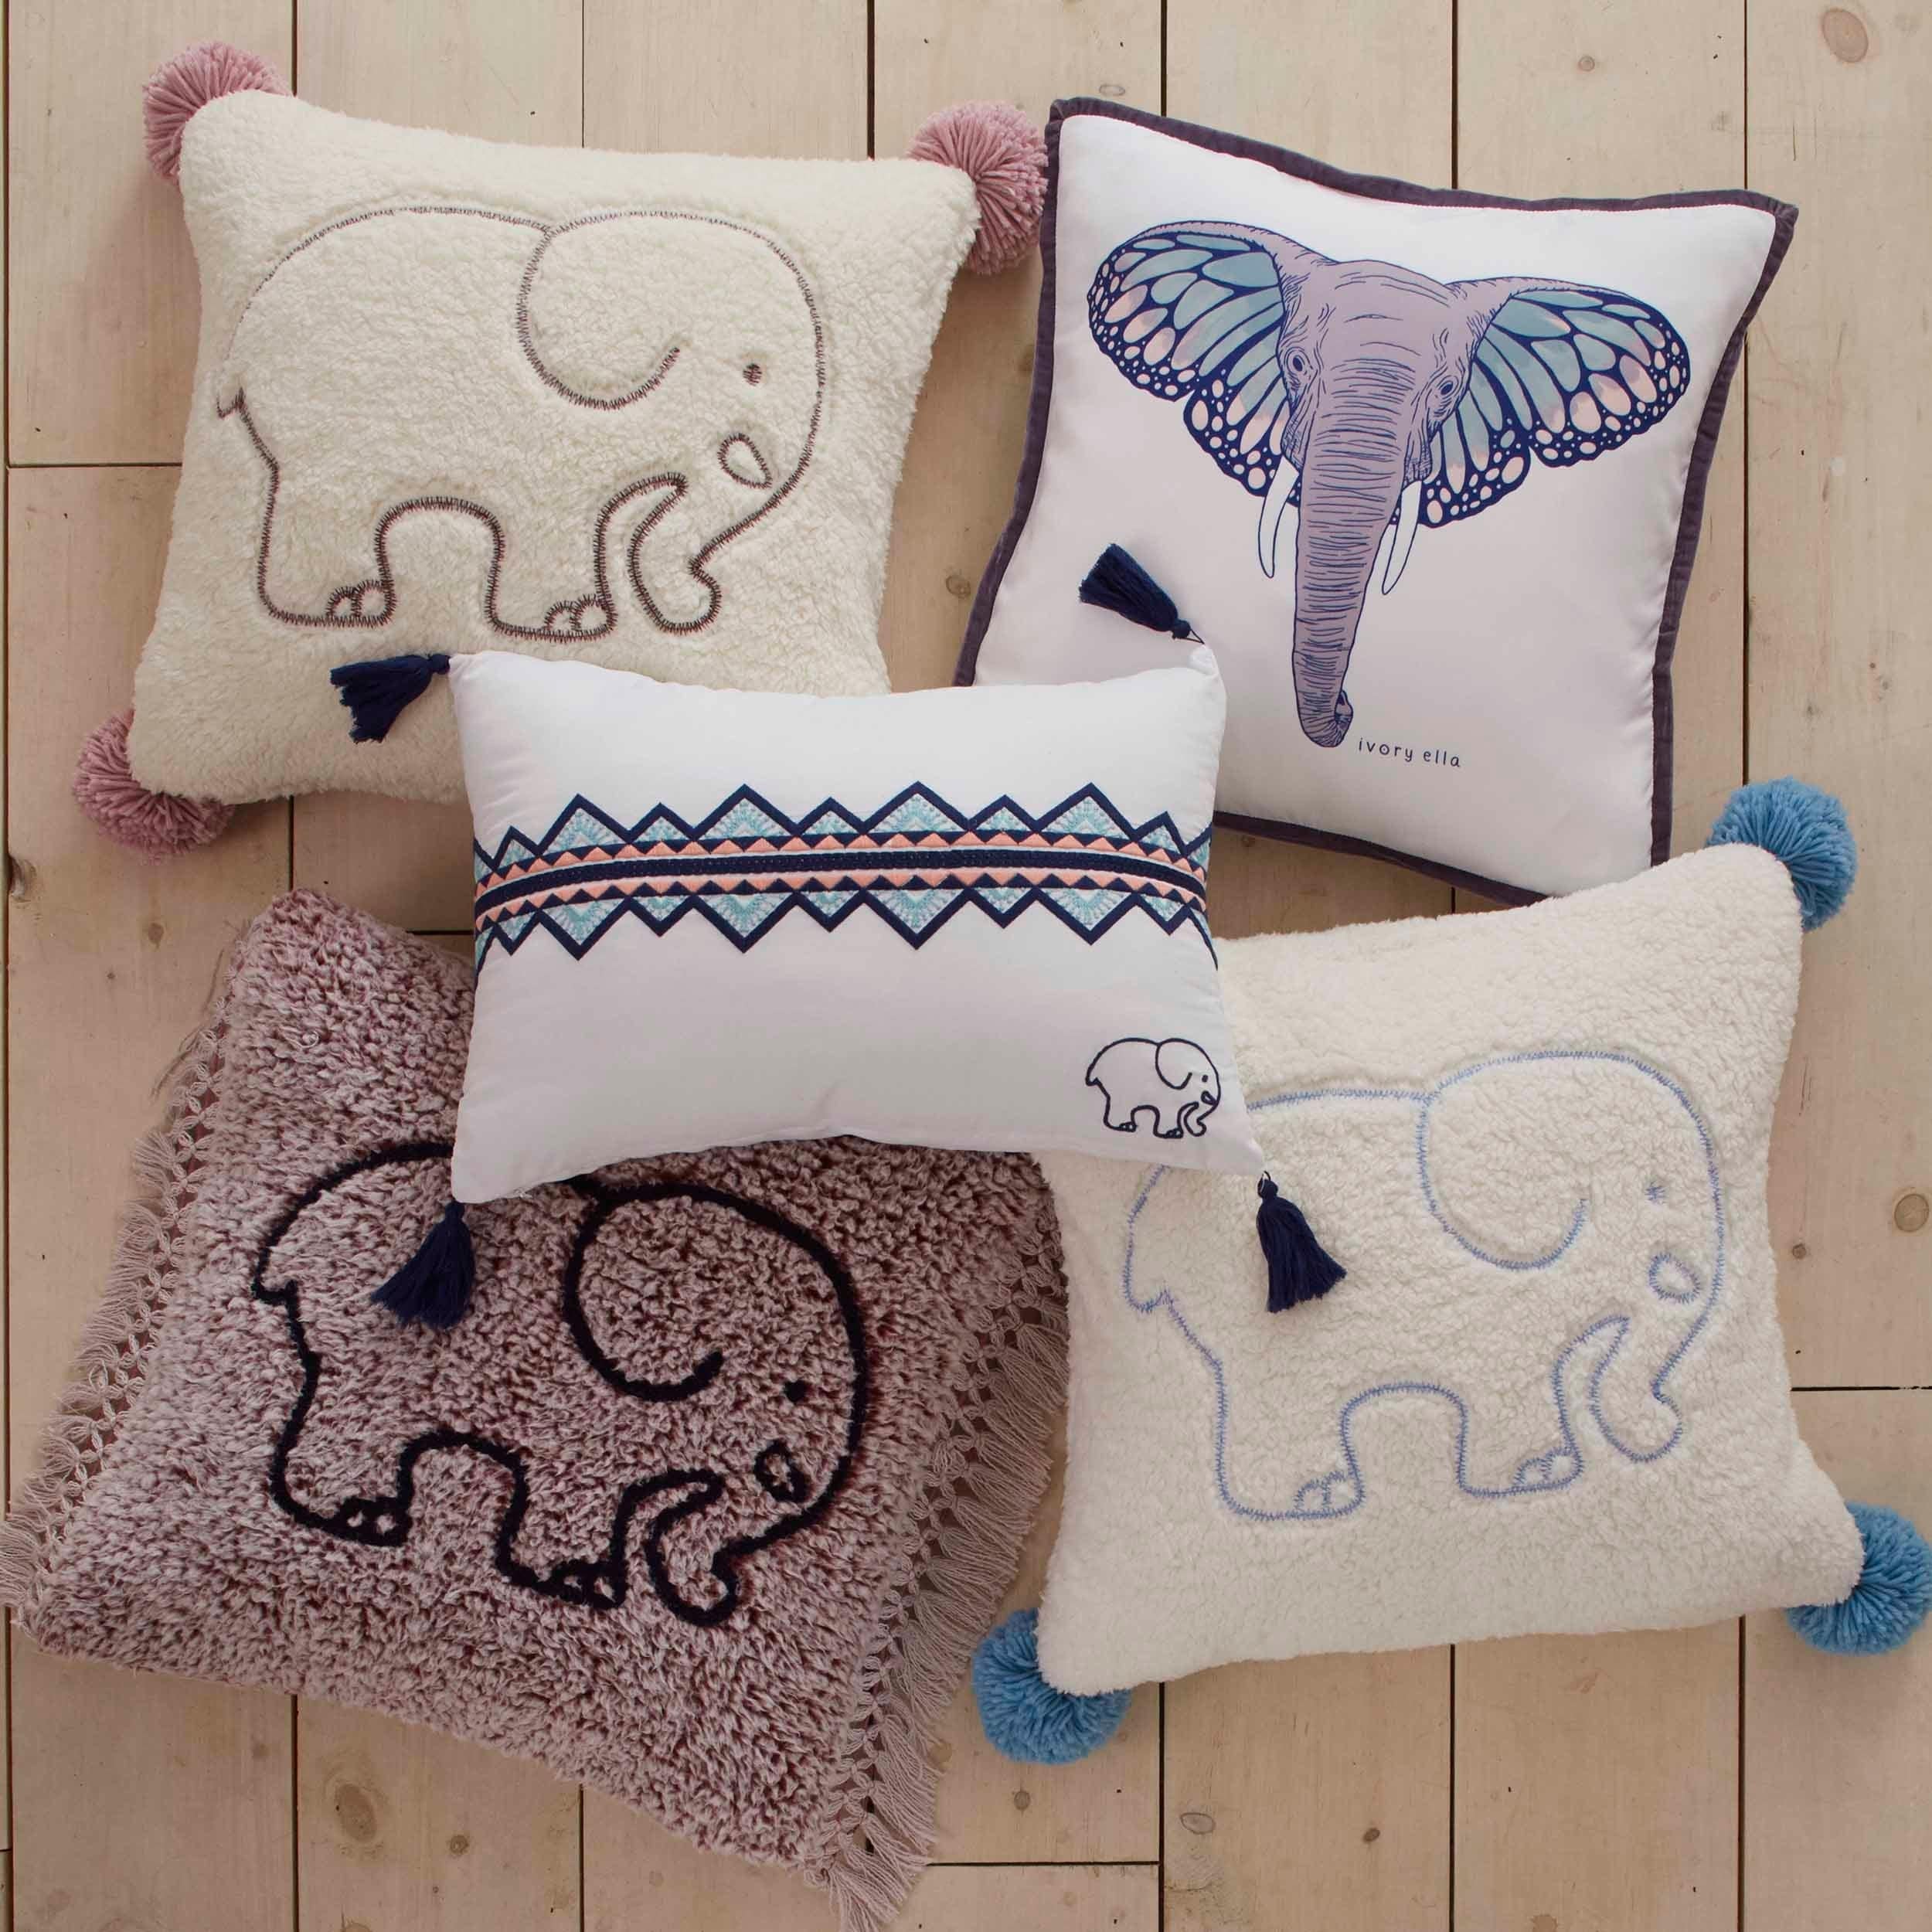 decorative pillows